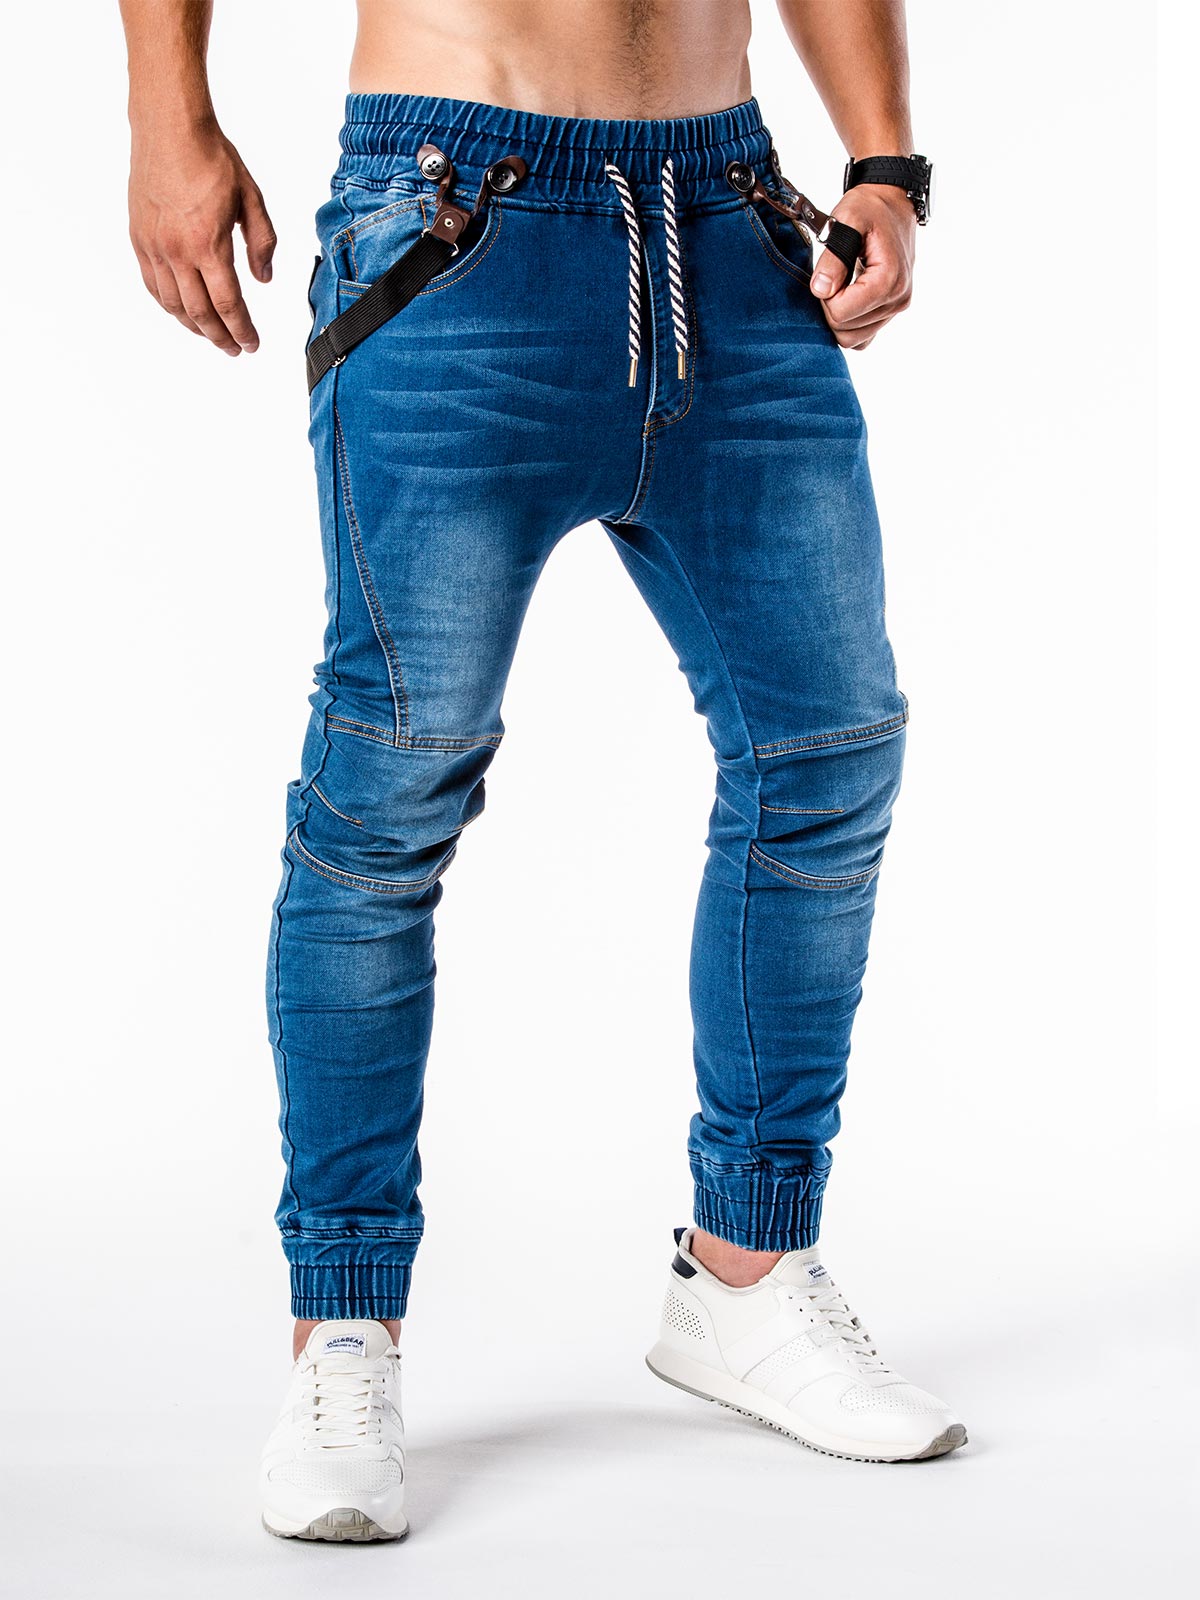 Топ джинсы мужские. Мужские джинсы джоггеры Коллинз. Джинсы джогеры 2y DNM by Adres Group. Красивые джинсы мужские. Джинсовые брюки мужские.